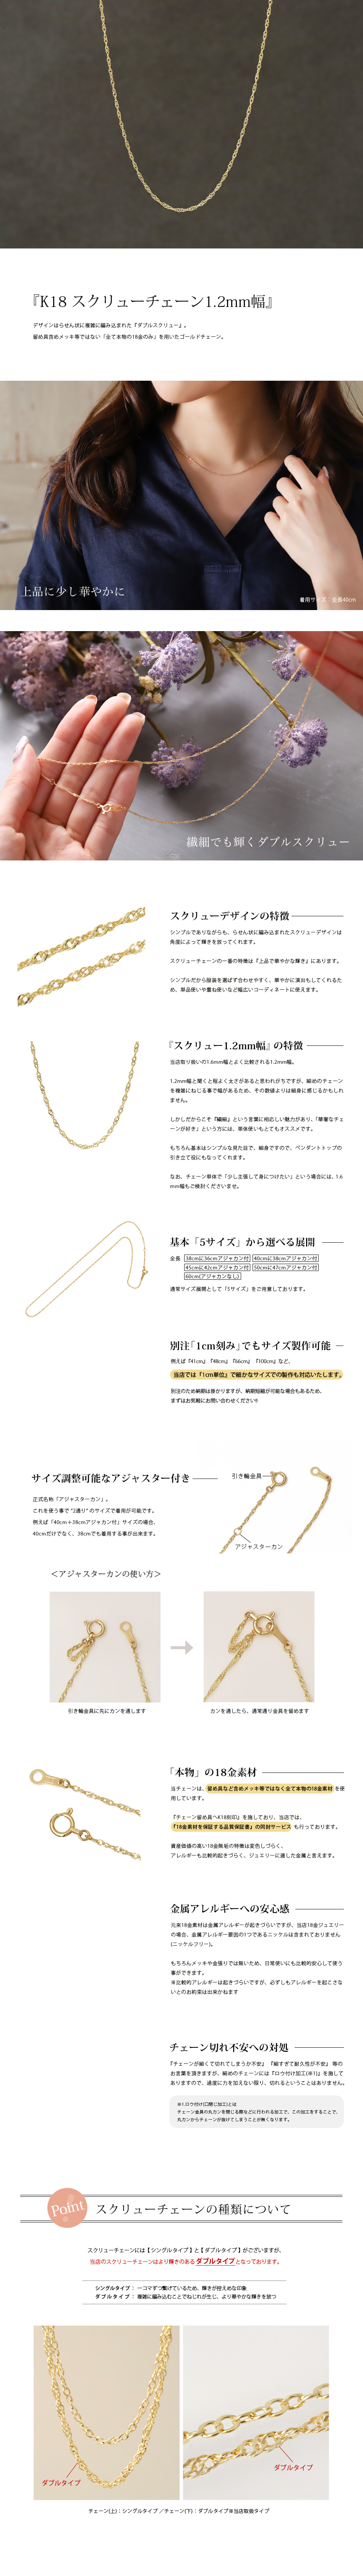 【楽天市場】18金 ネックレス チェーン レディース メンズ シンプル ダブル スクリュー 1.2mm幅 18金ネックレス のみ つけっぱなし